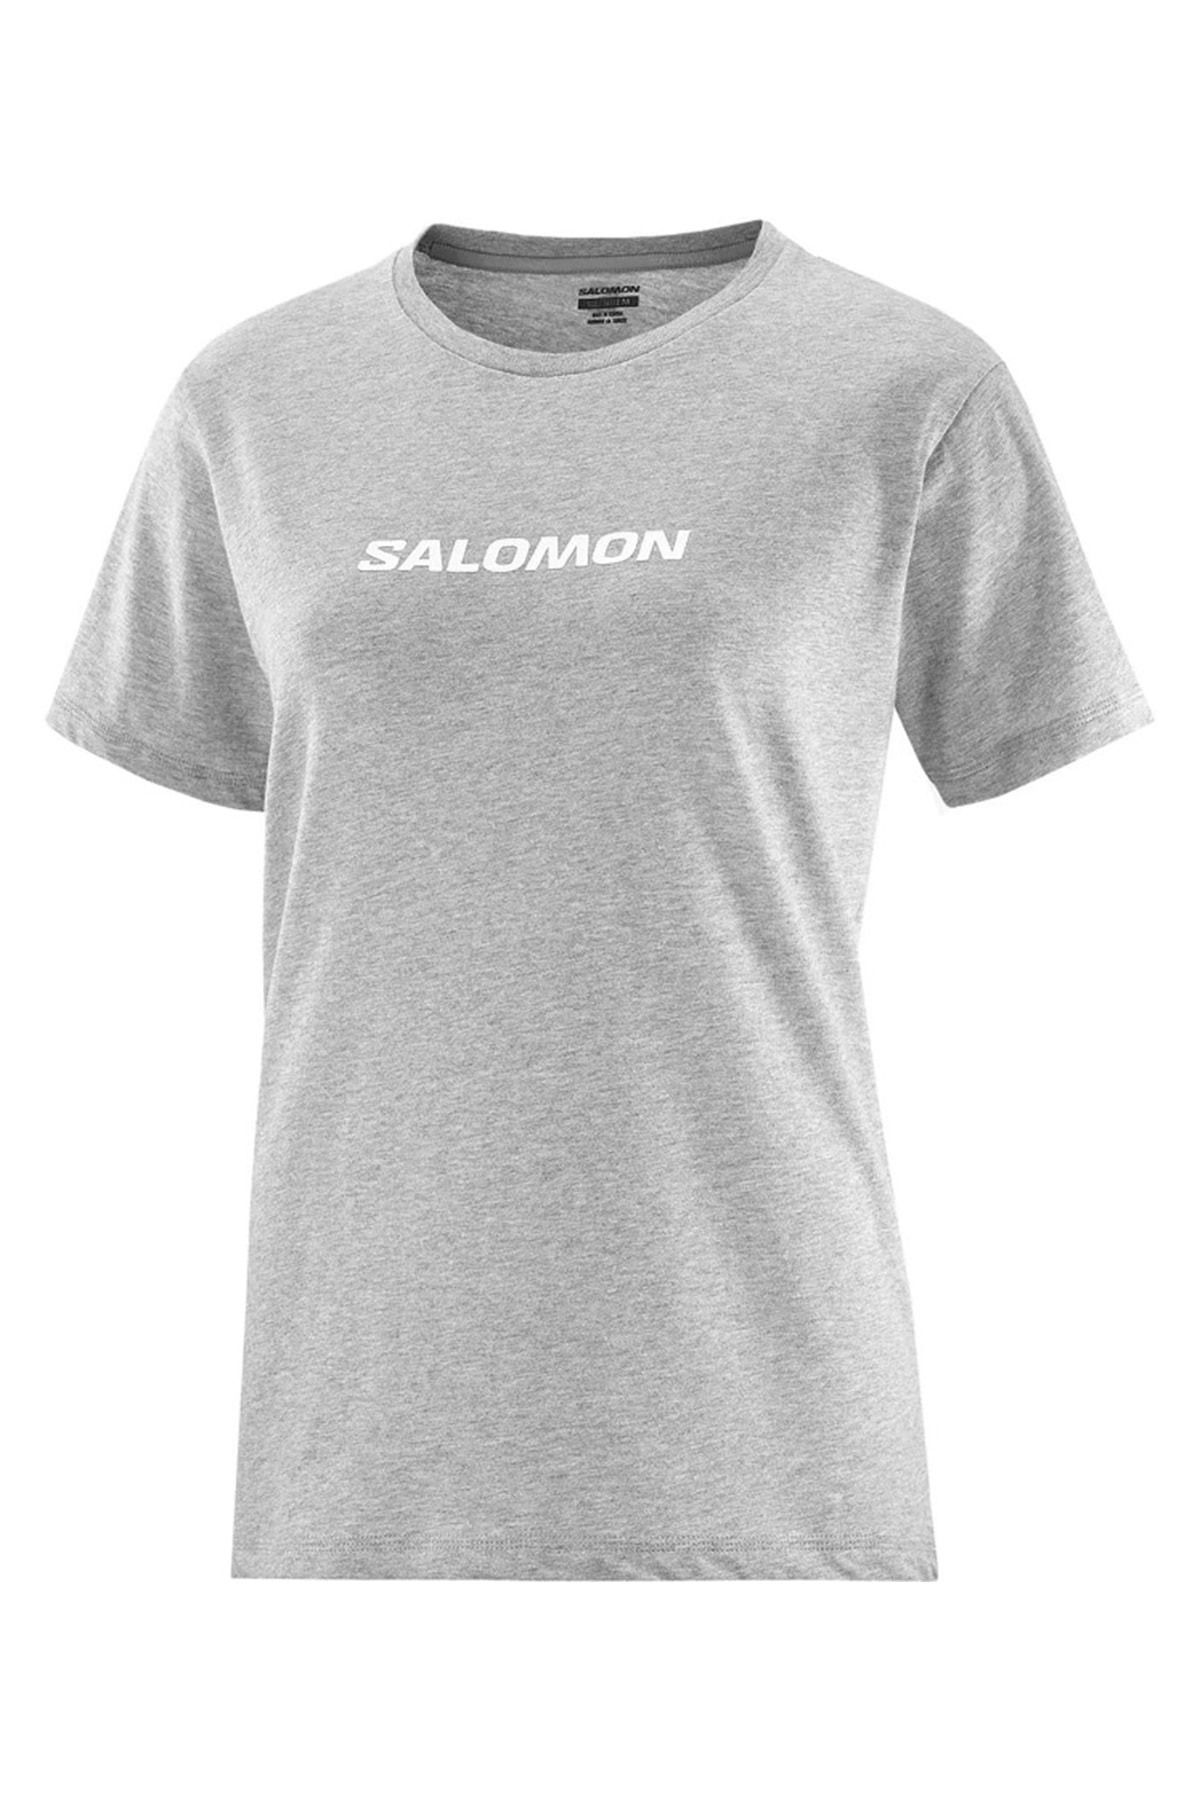 Salomon Lc2217 Logo Ss Tee W Tişört Kadın T-shirt Gri